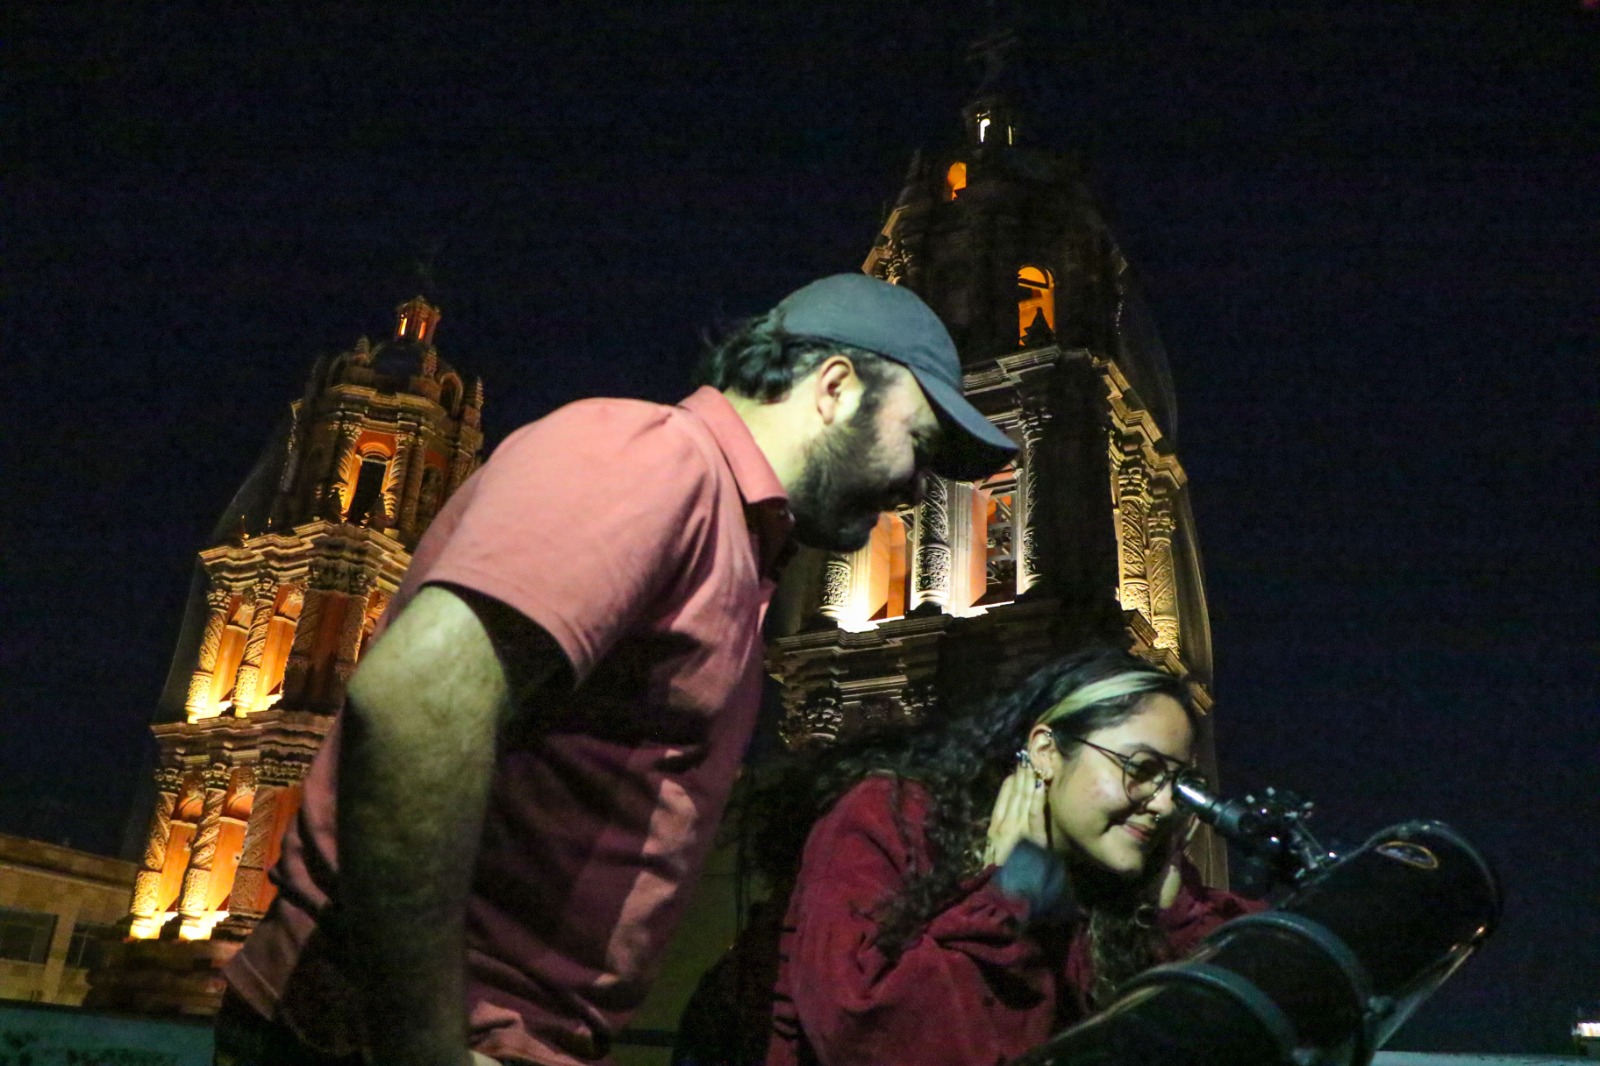 La Dirección de Cultura Municipal y la Agrupación ChipOhm prepara una segunda noche Astronómica en Palacio Municipal.